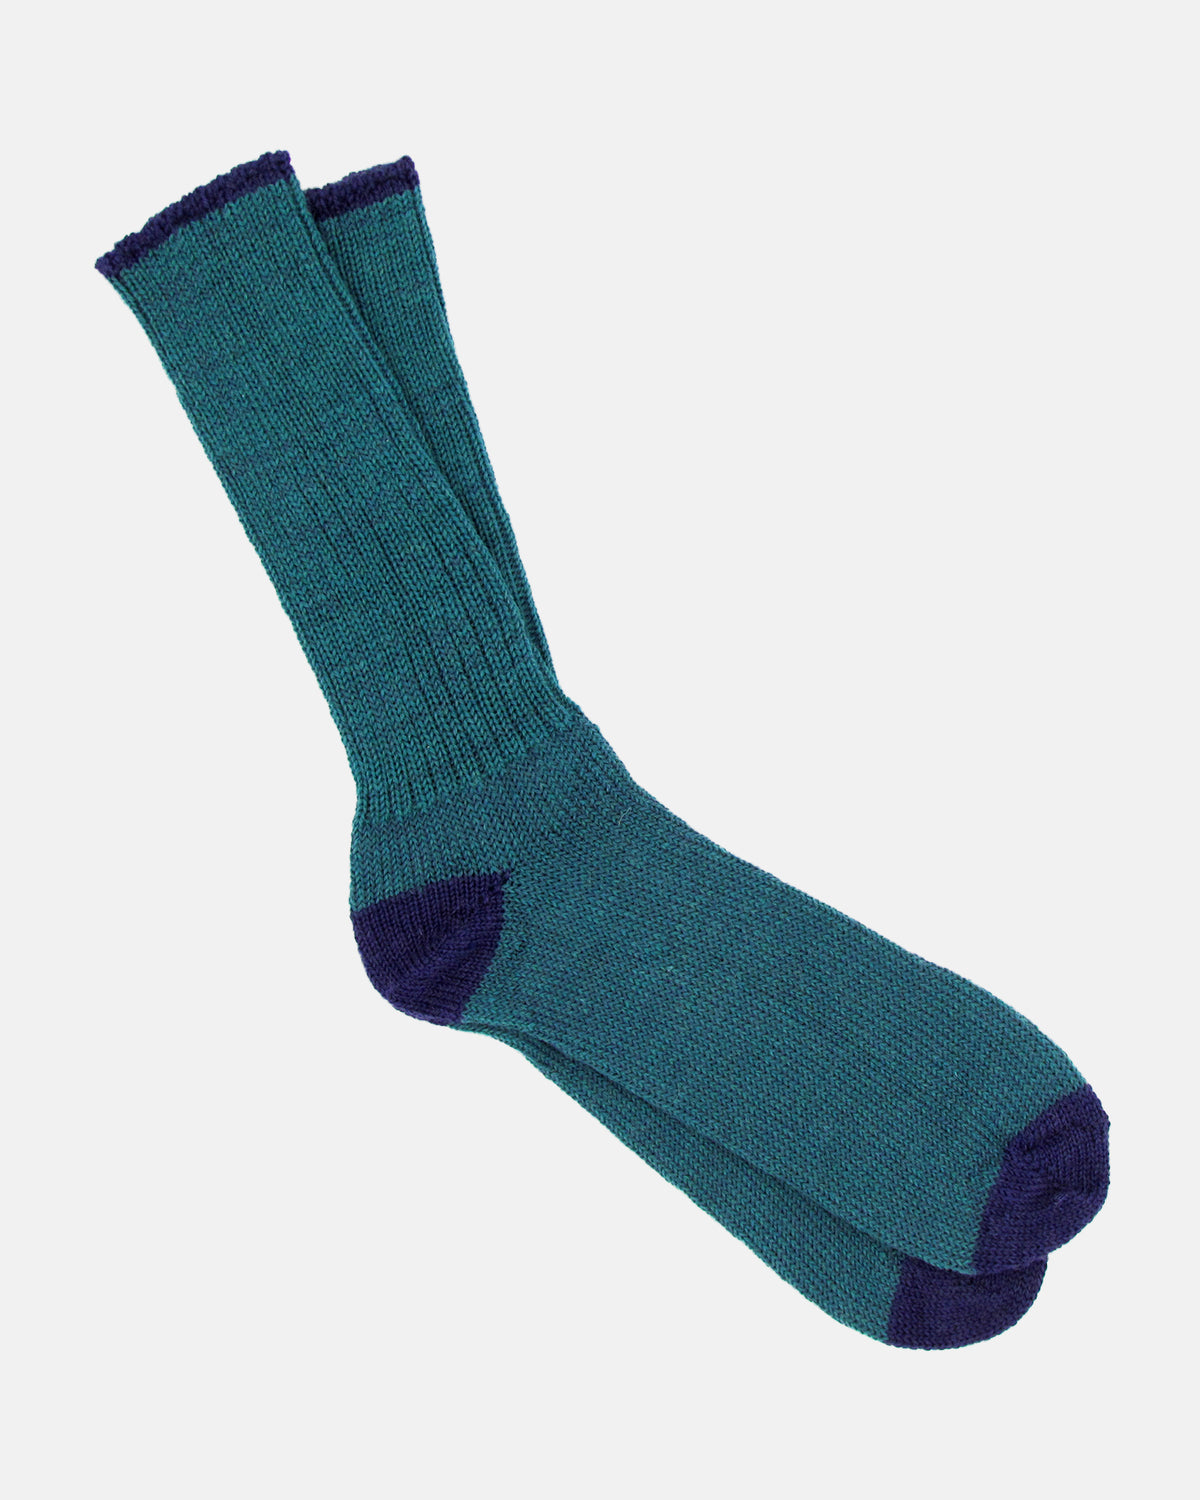 Soft Wool Socks - Aqua/Violet